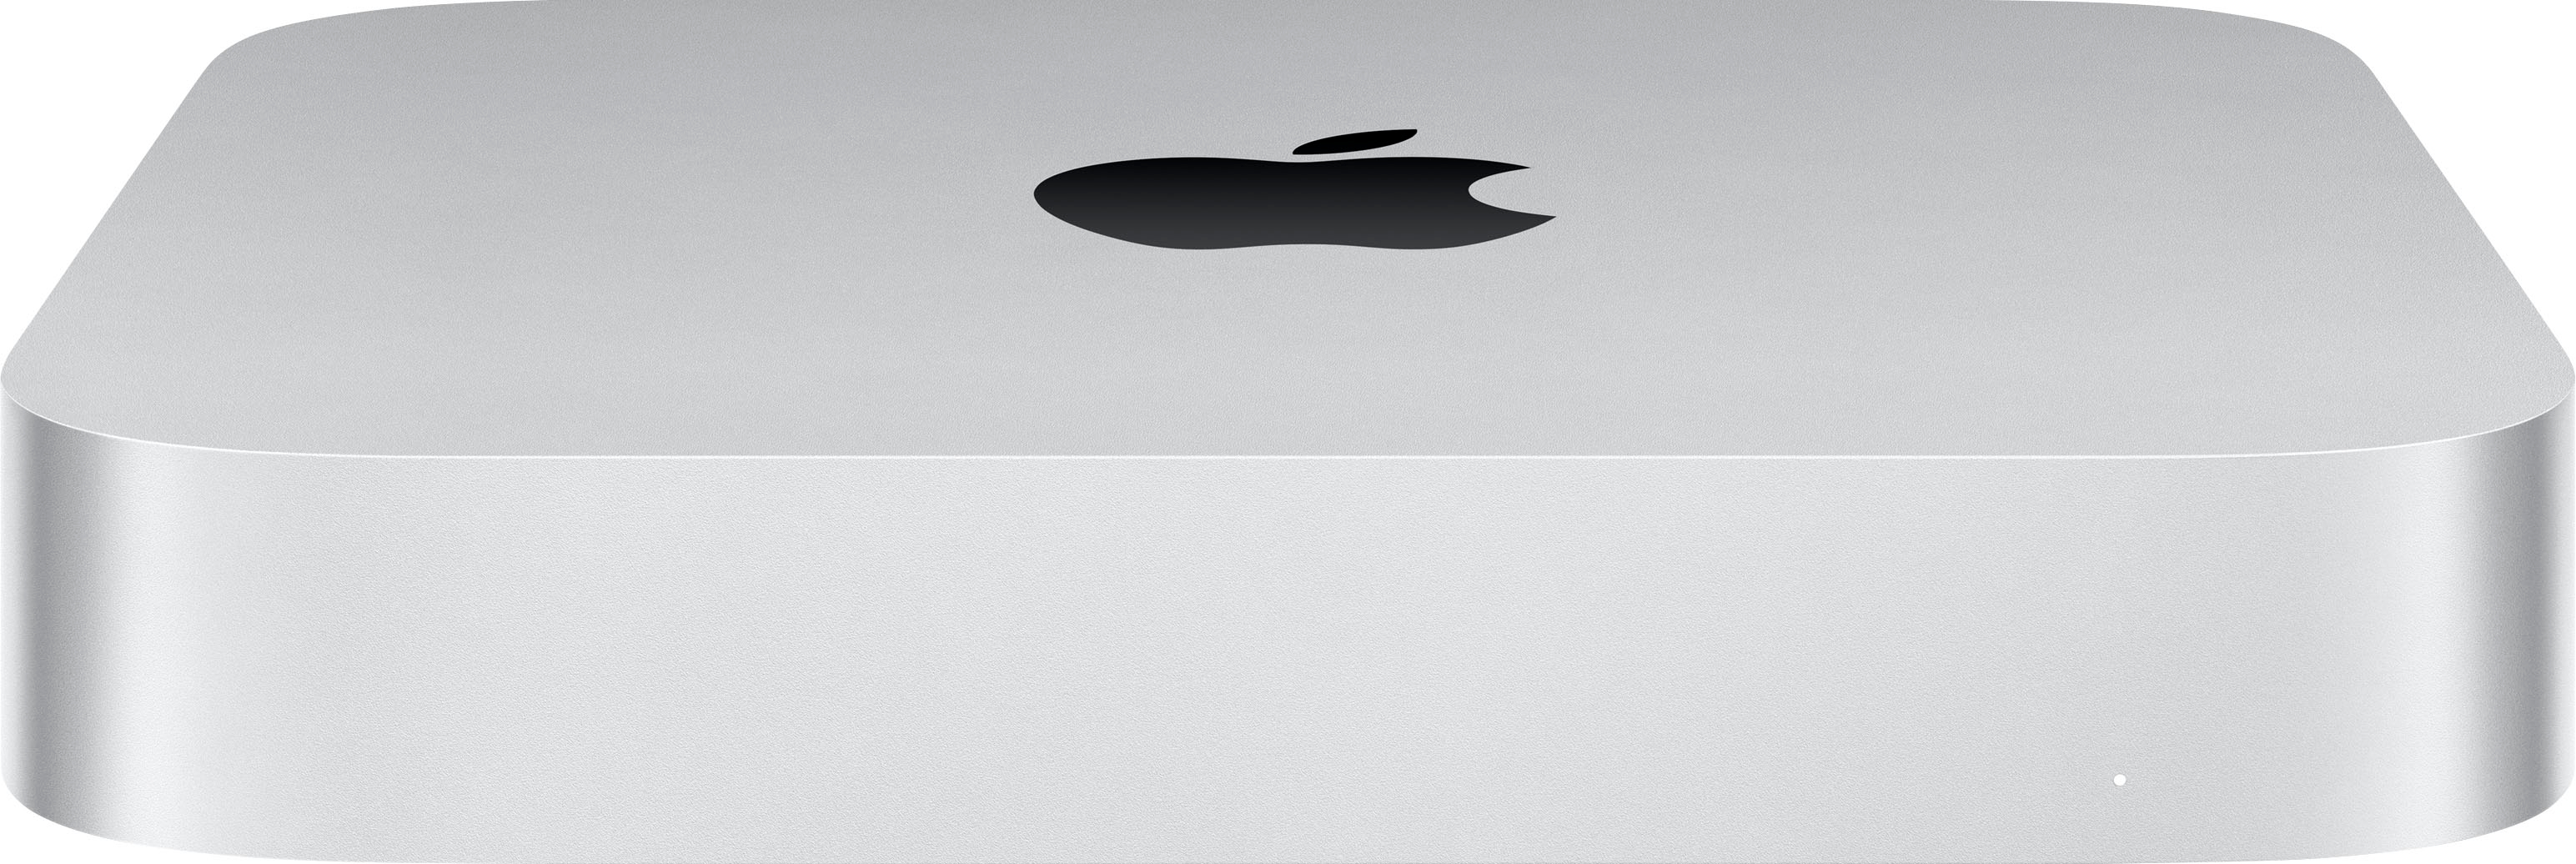 Mac mini (2020, Apple M1, 8GB, 256GB)